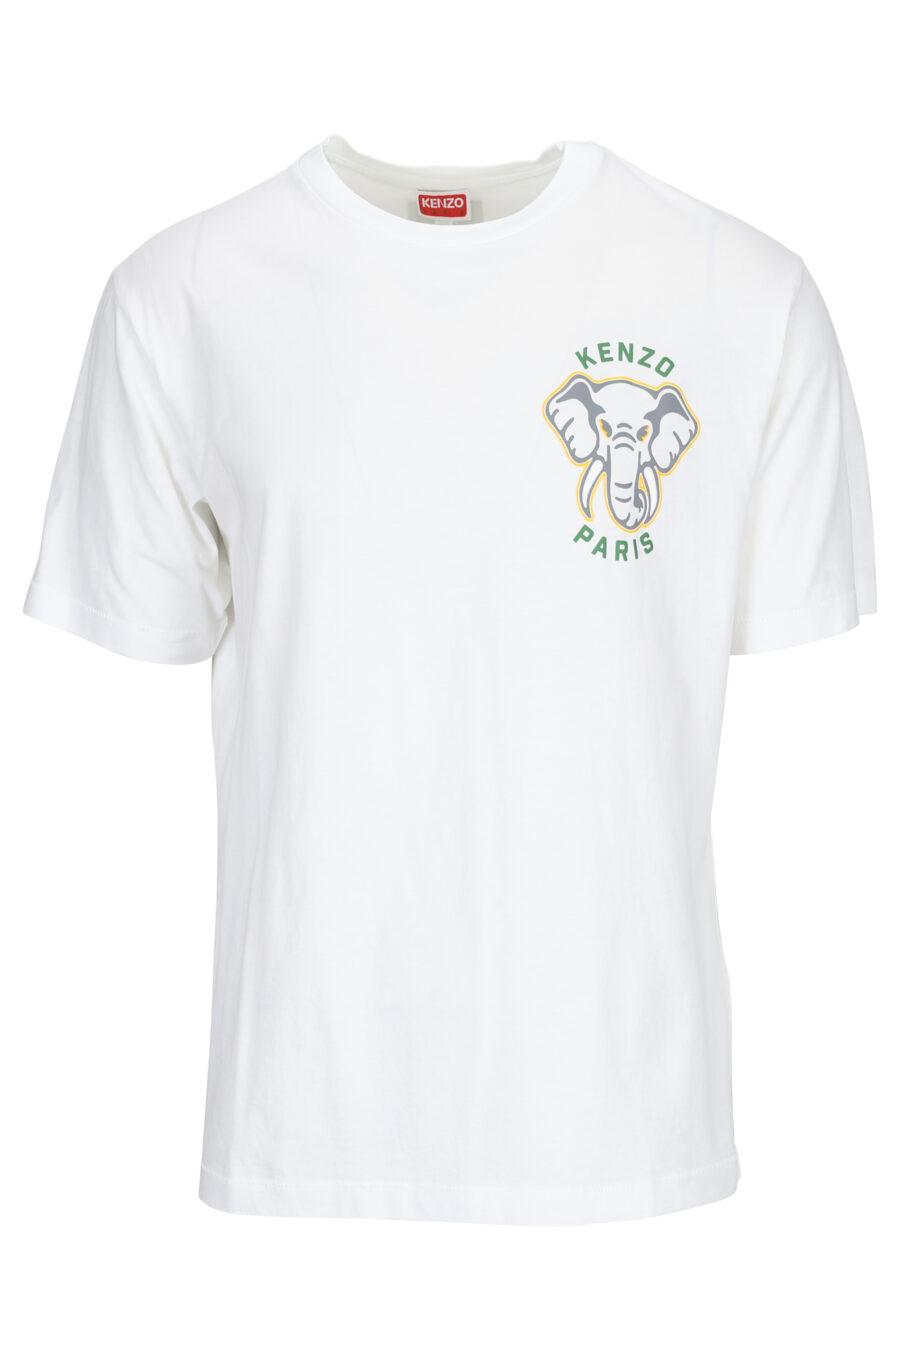 Weißes T-Shirt mit Elefanten-Minilogie - 3612230553590